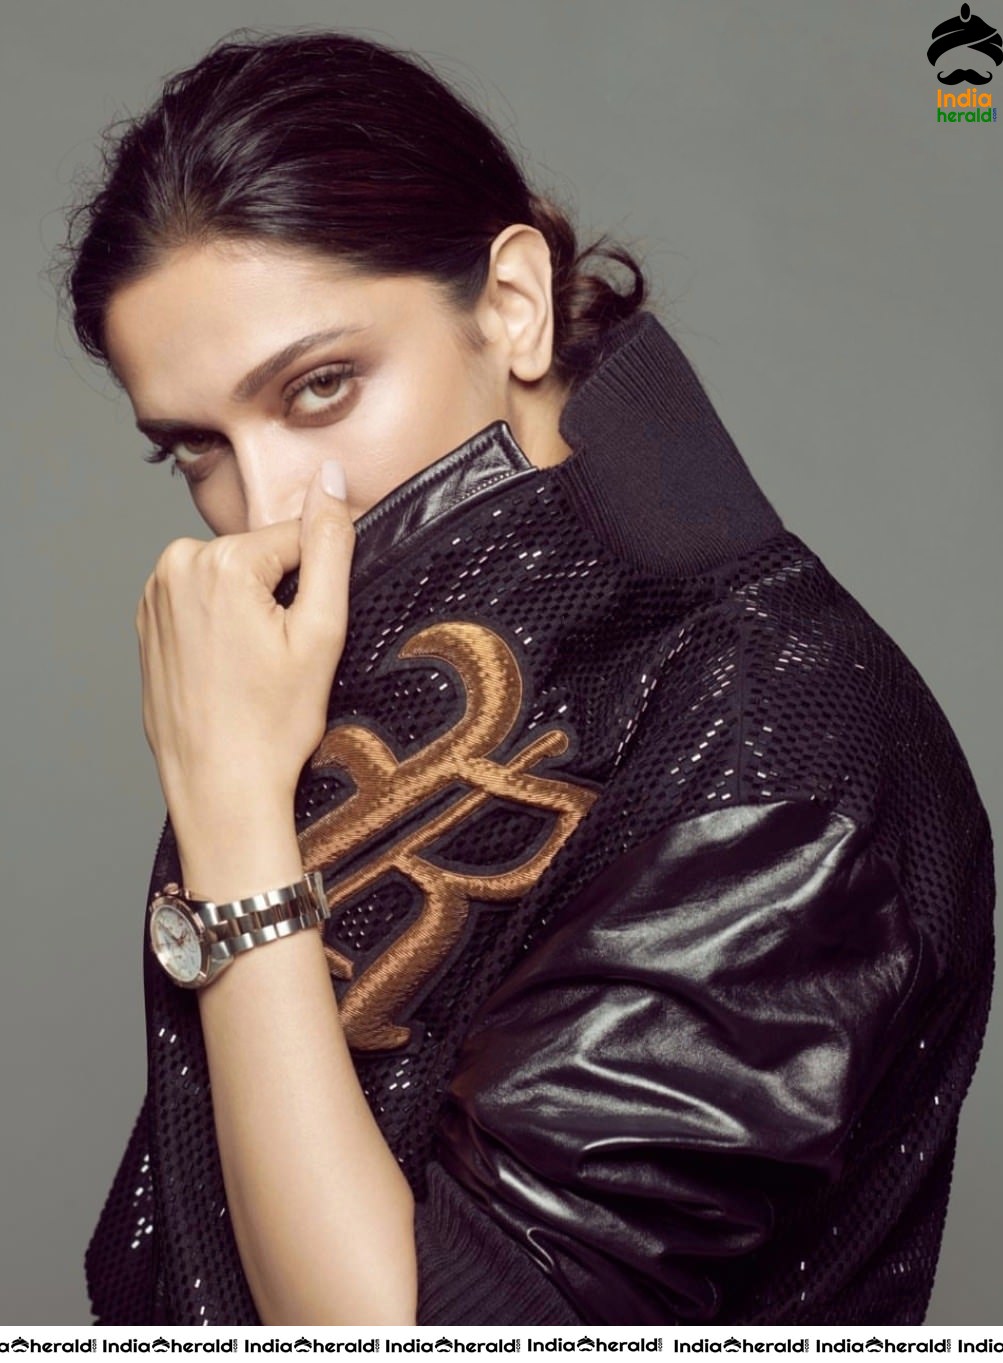 Deepika Padukone poses hot and sensuous for Harpers Bazaar Magazine